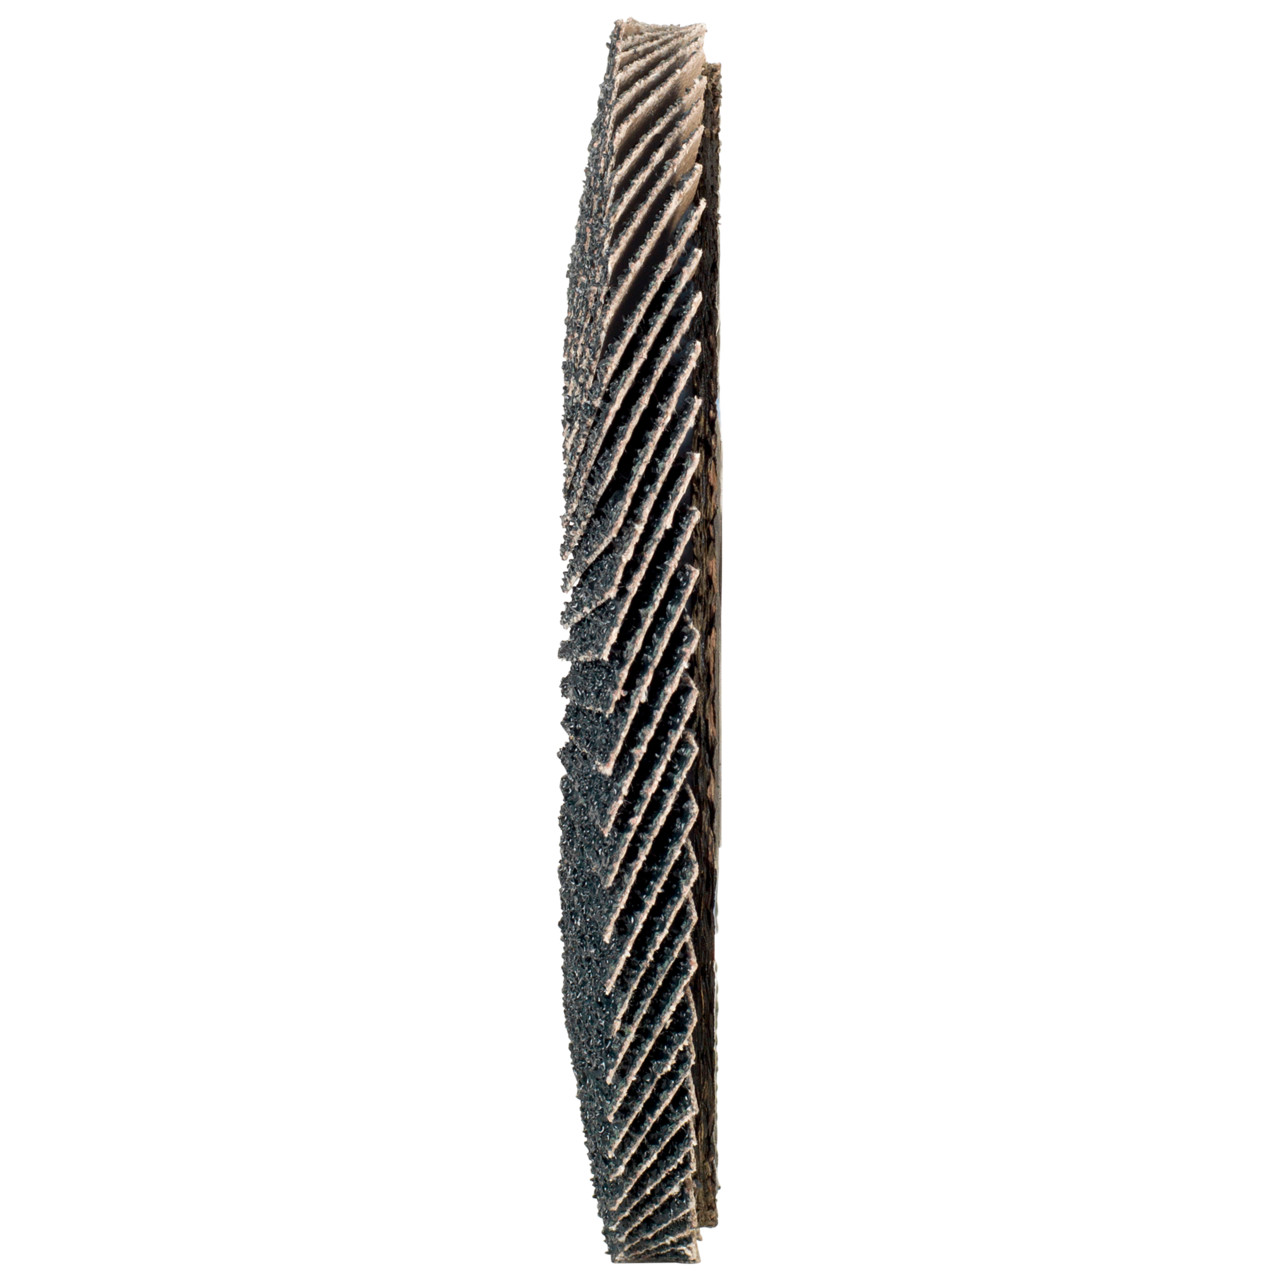 Rondella dentata Tyrolit DxH 125x22.2 2in1 per acciaio e acciaio inox, P40, forma: 27A - versione offset (versione con corpo portante in fibra di vetro), Art. 668663